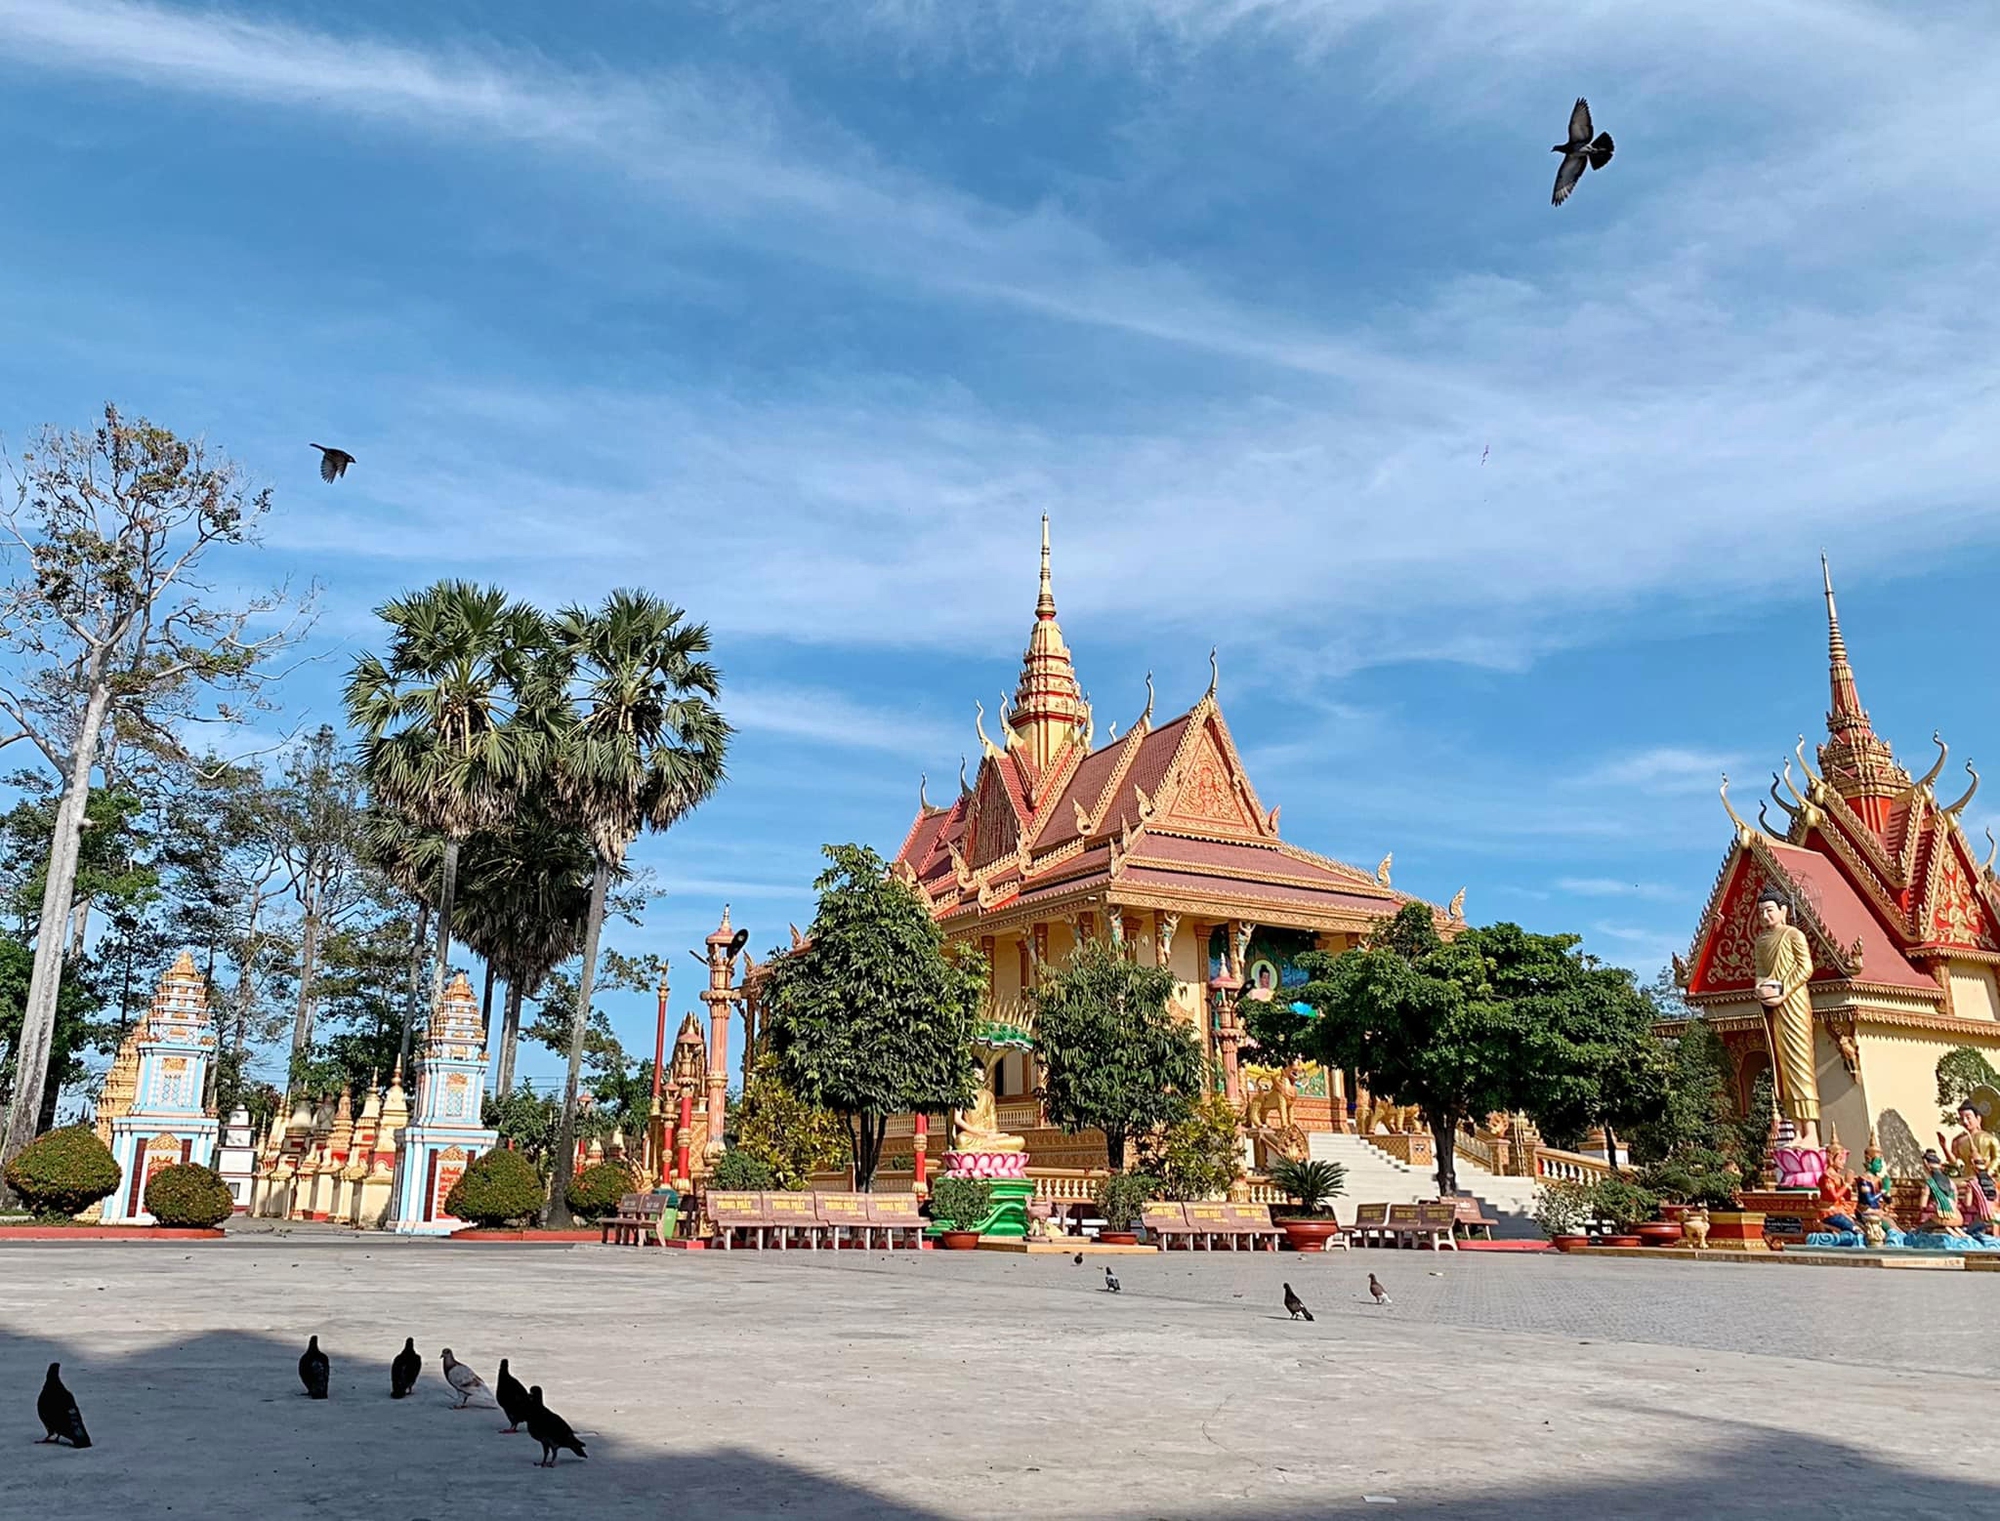 Phát hiện ngôi chùa trăm tuổi mang nét kiến trúc độc đáo ở miền Tây, du khách nhận xét mang vẻ đẹp “không thể quên” - Ảnh 6.